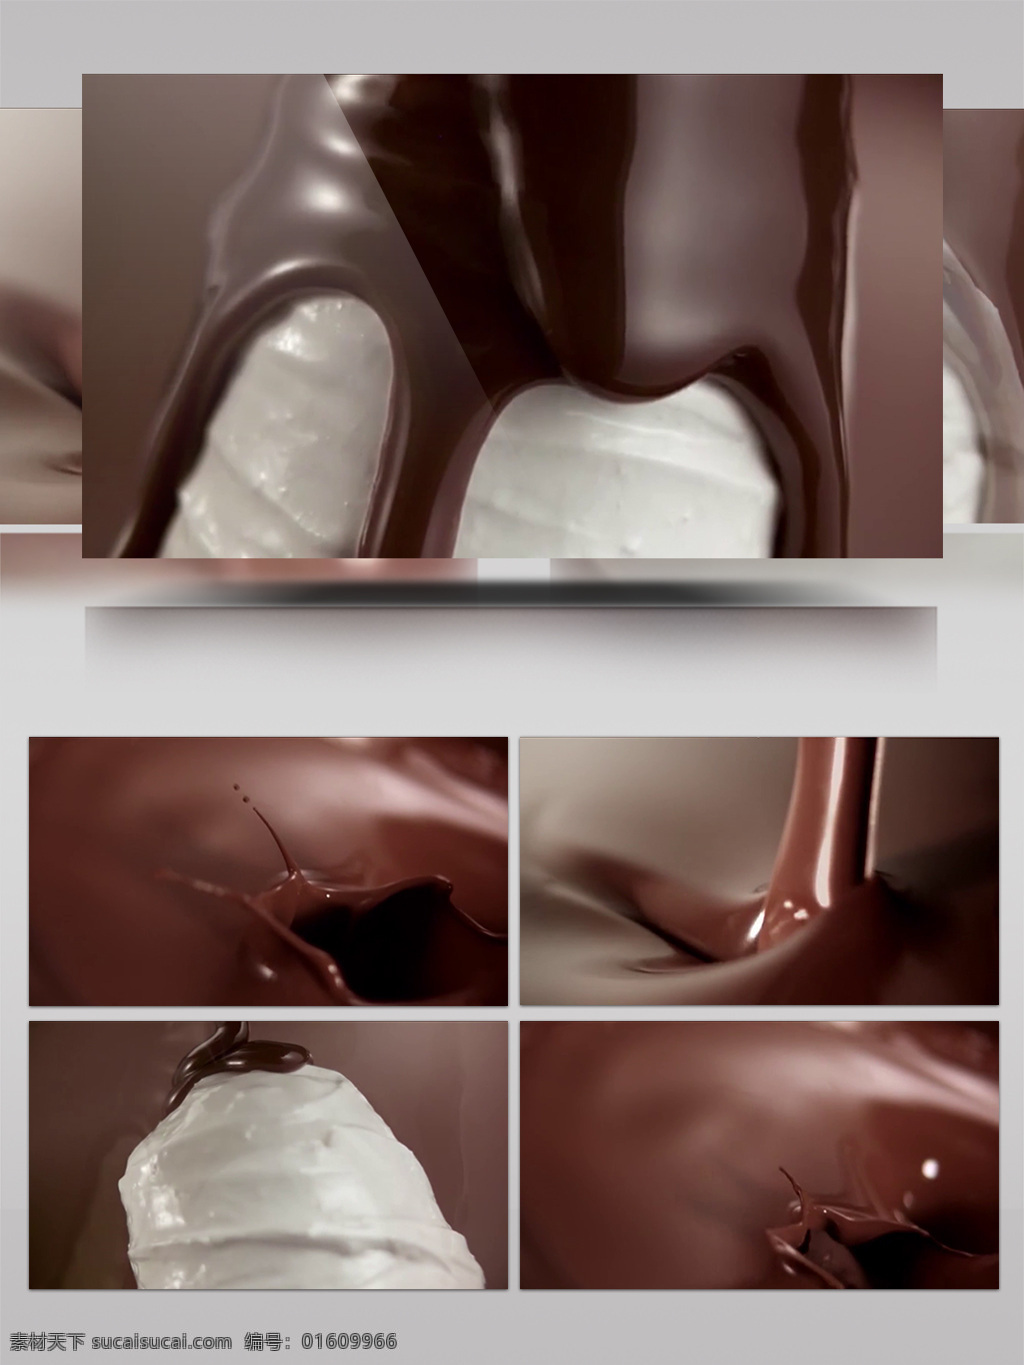 融化 巧克力 冰 激 淋 视频 融化的巧克力 制作视频素材 巧克力蛋糕 甜点 美食 冰激淋视频 美食烹饪 顶级美食工艺 甜点制作 美食制作 巧克力甜点 巧克力可可